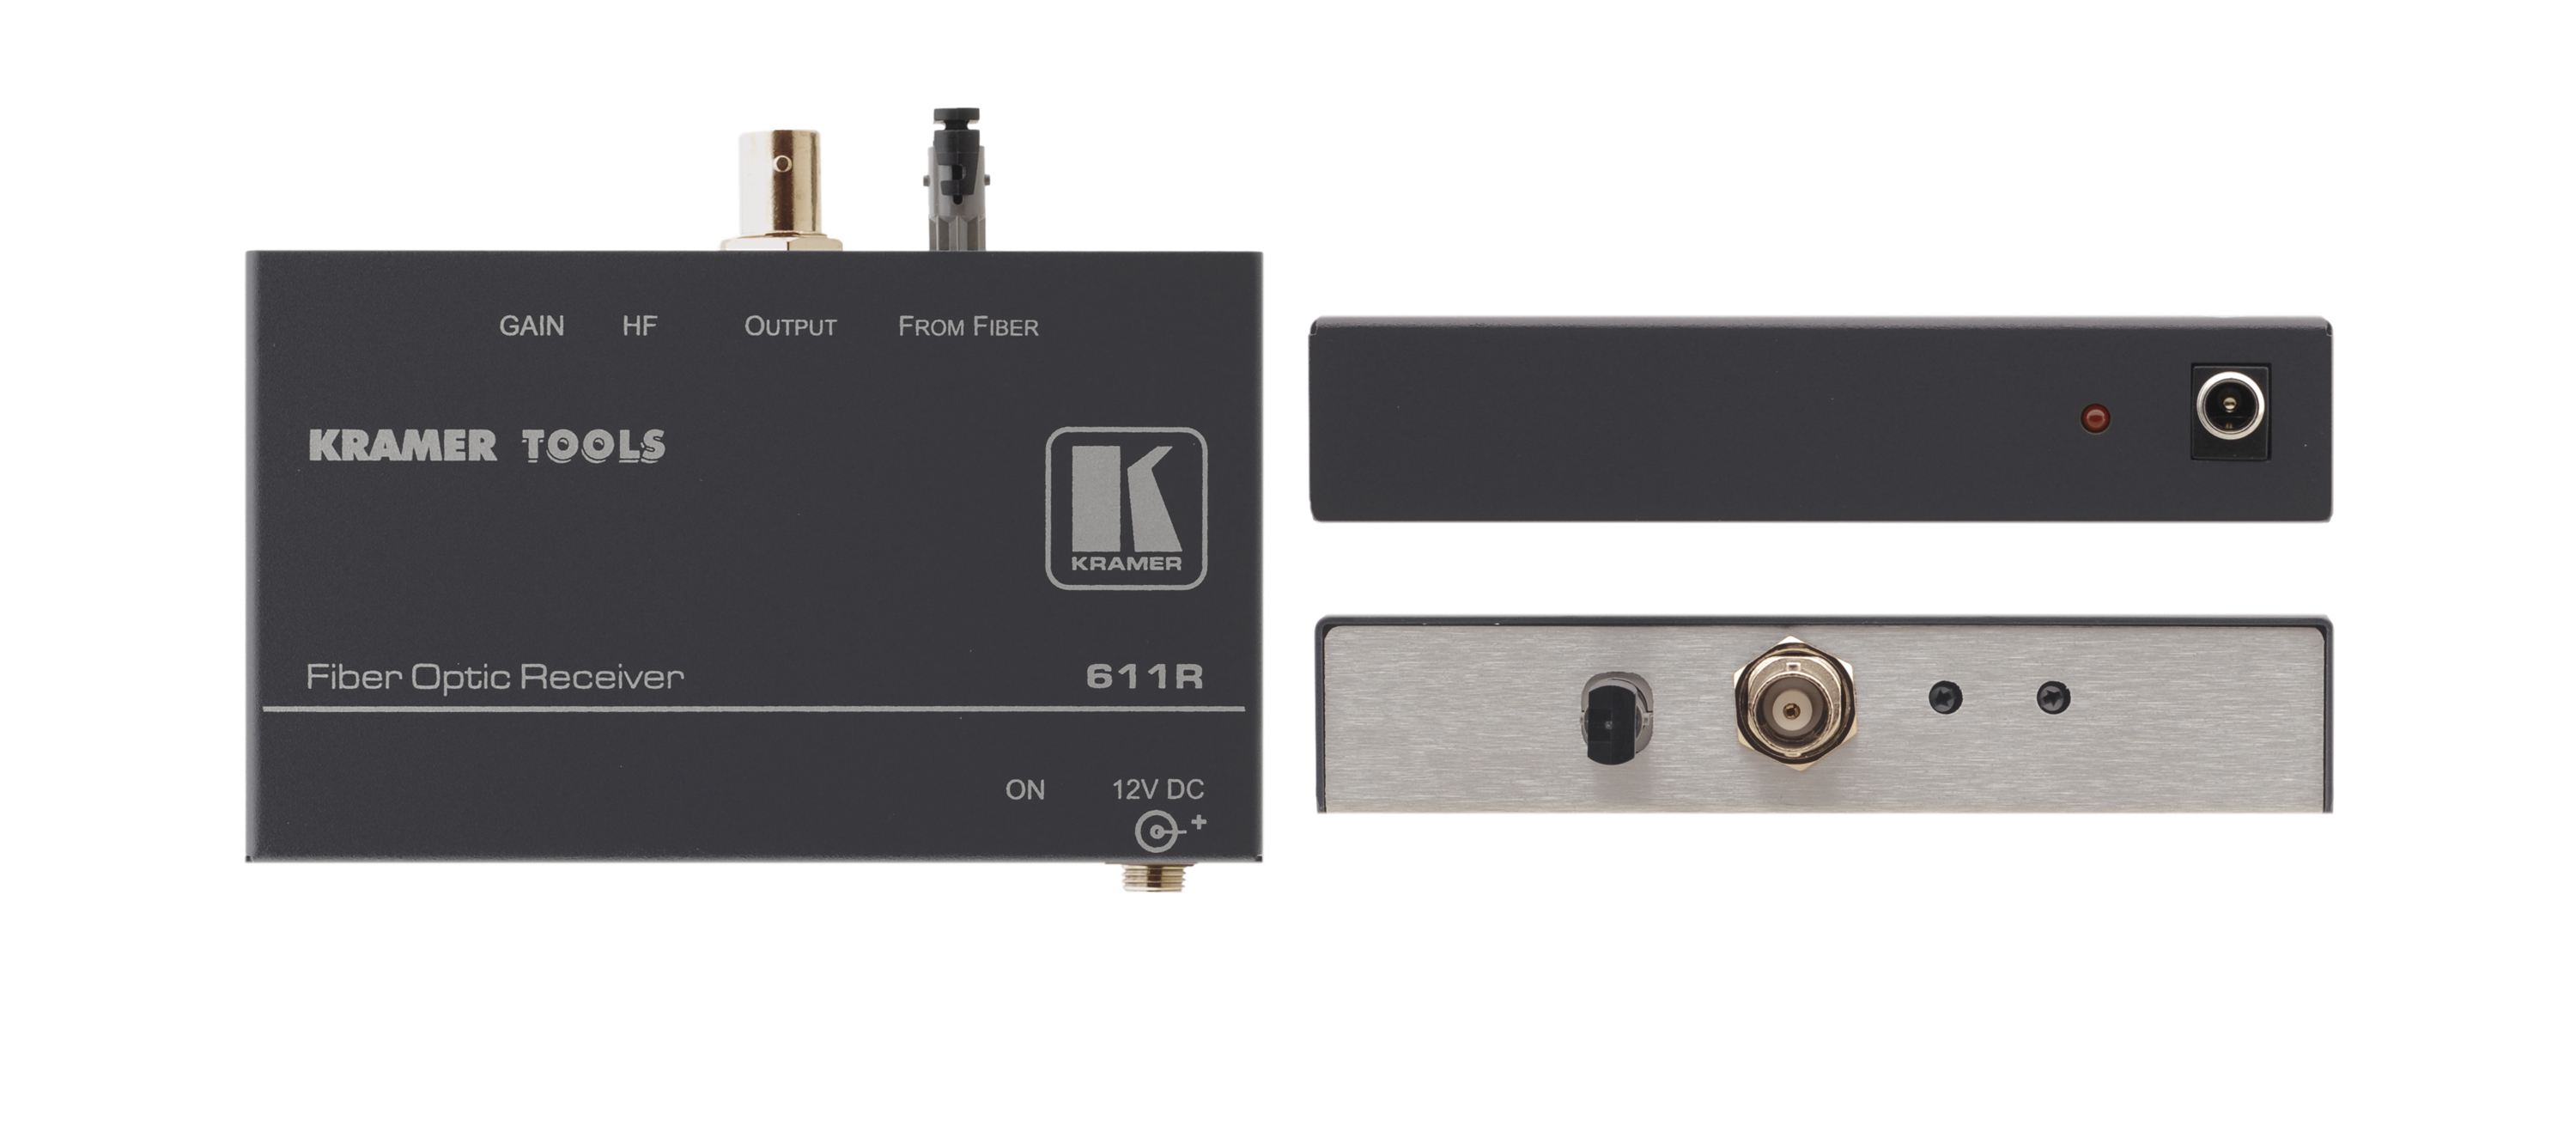 Приёмник Kramer 611R композитного видеосигнала по волоконно-оптической линии с регулировкой уровня сигнала и АЧХ. Дальность действия 611T/611R составляет пять километров (многомодовый режим)